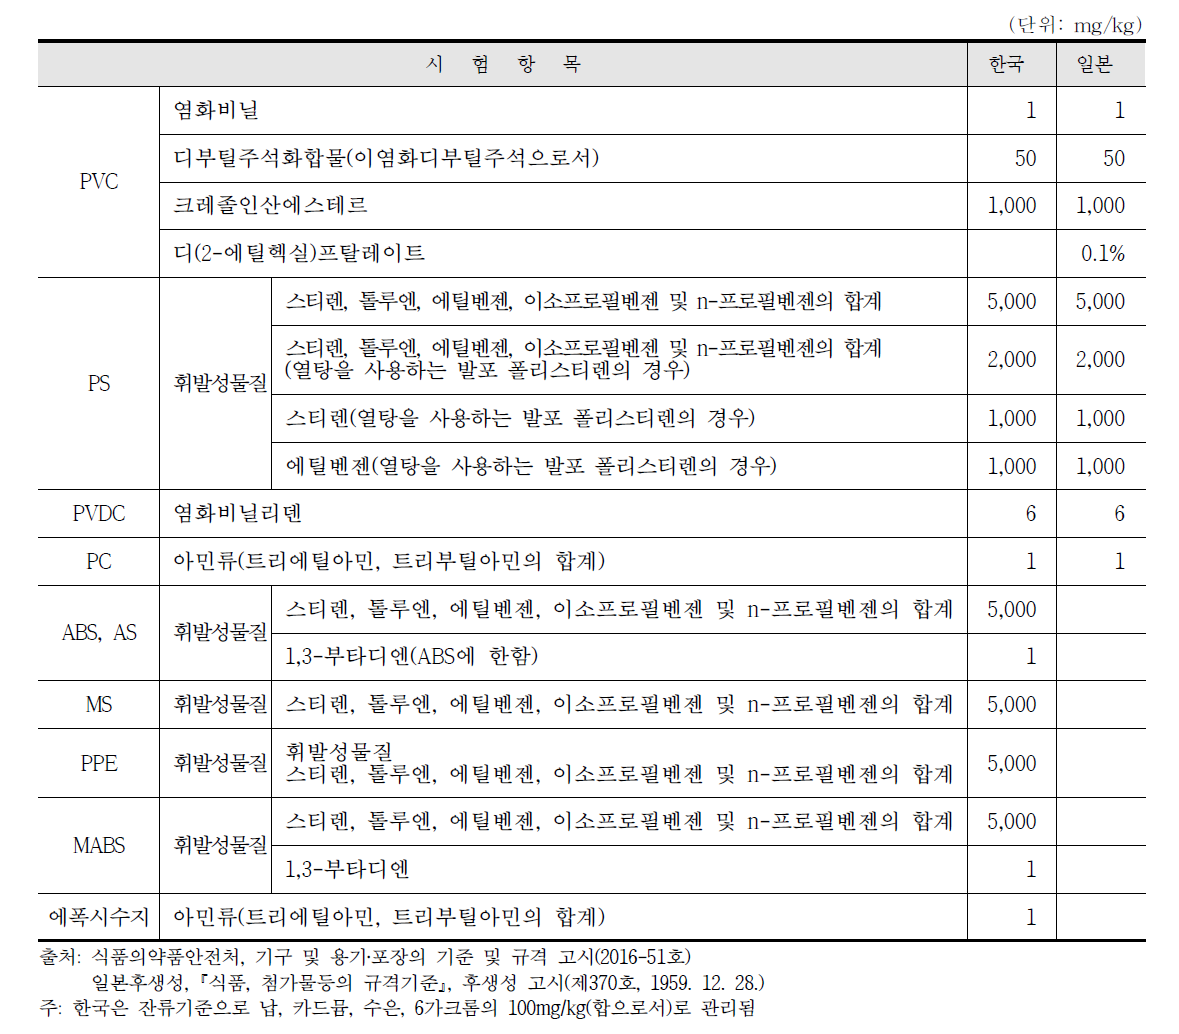 한국과 일본의 잔류 기준 및 규격의 비교